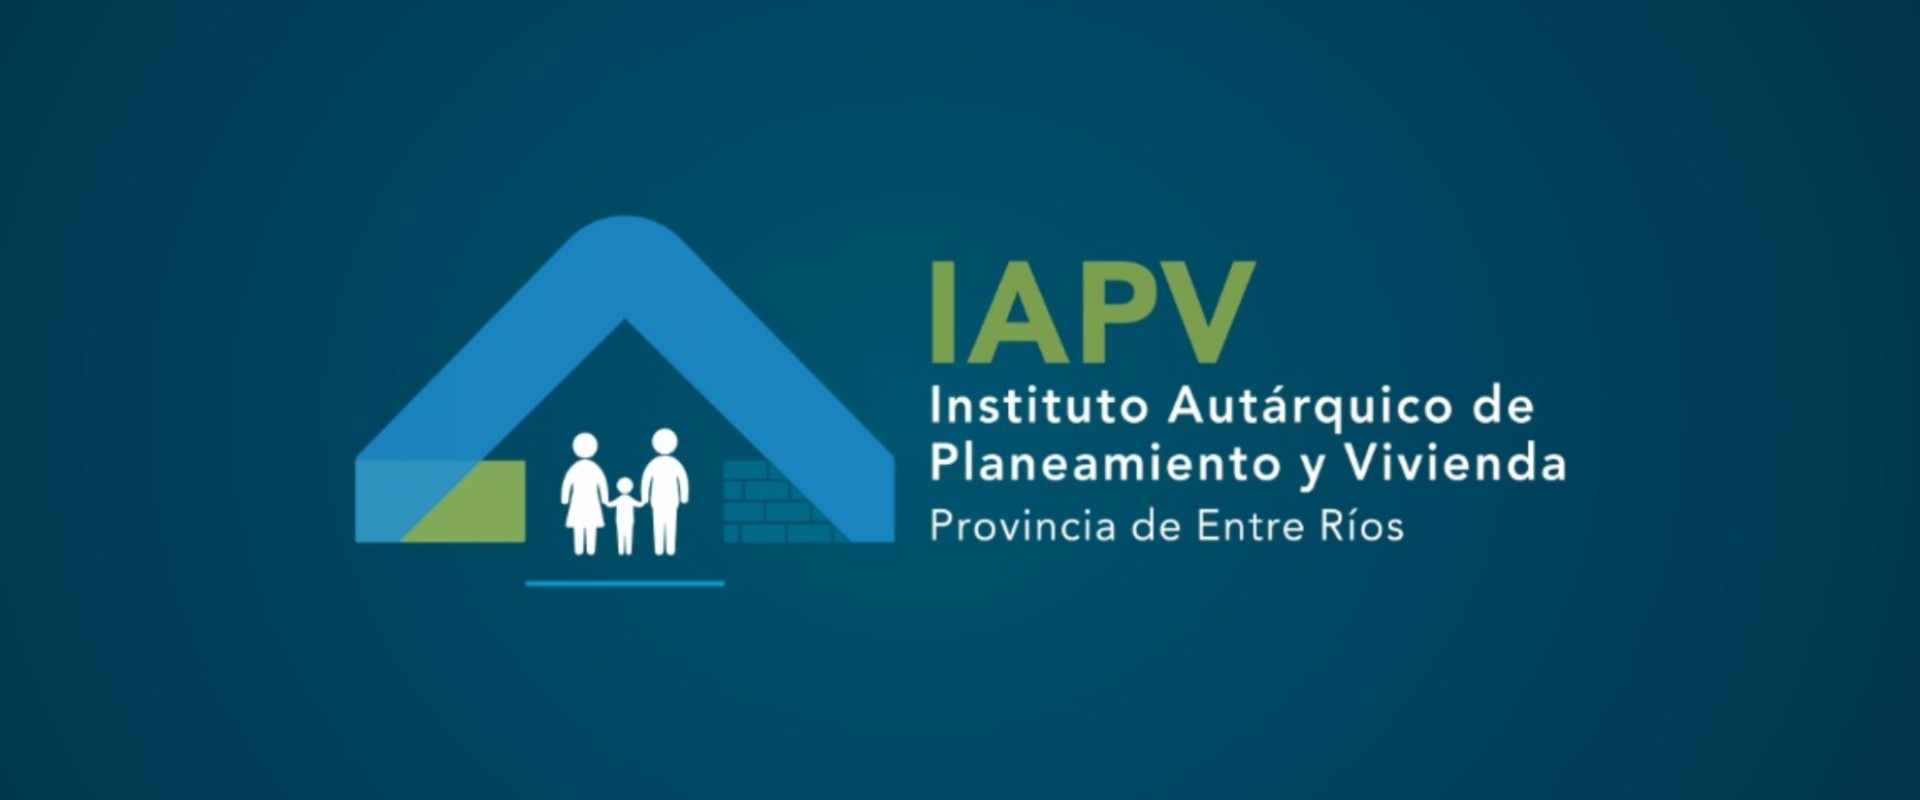 IAPV mantendrá guardias mínimas para la atención público